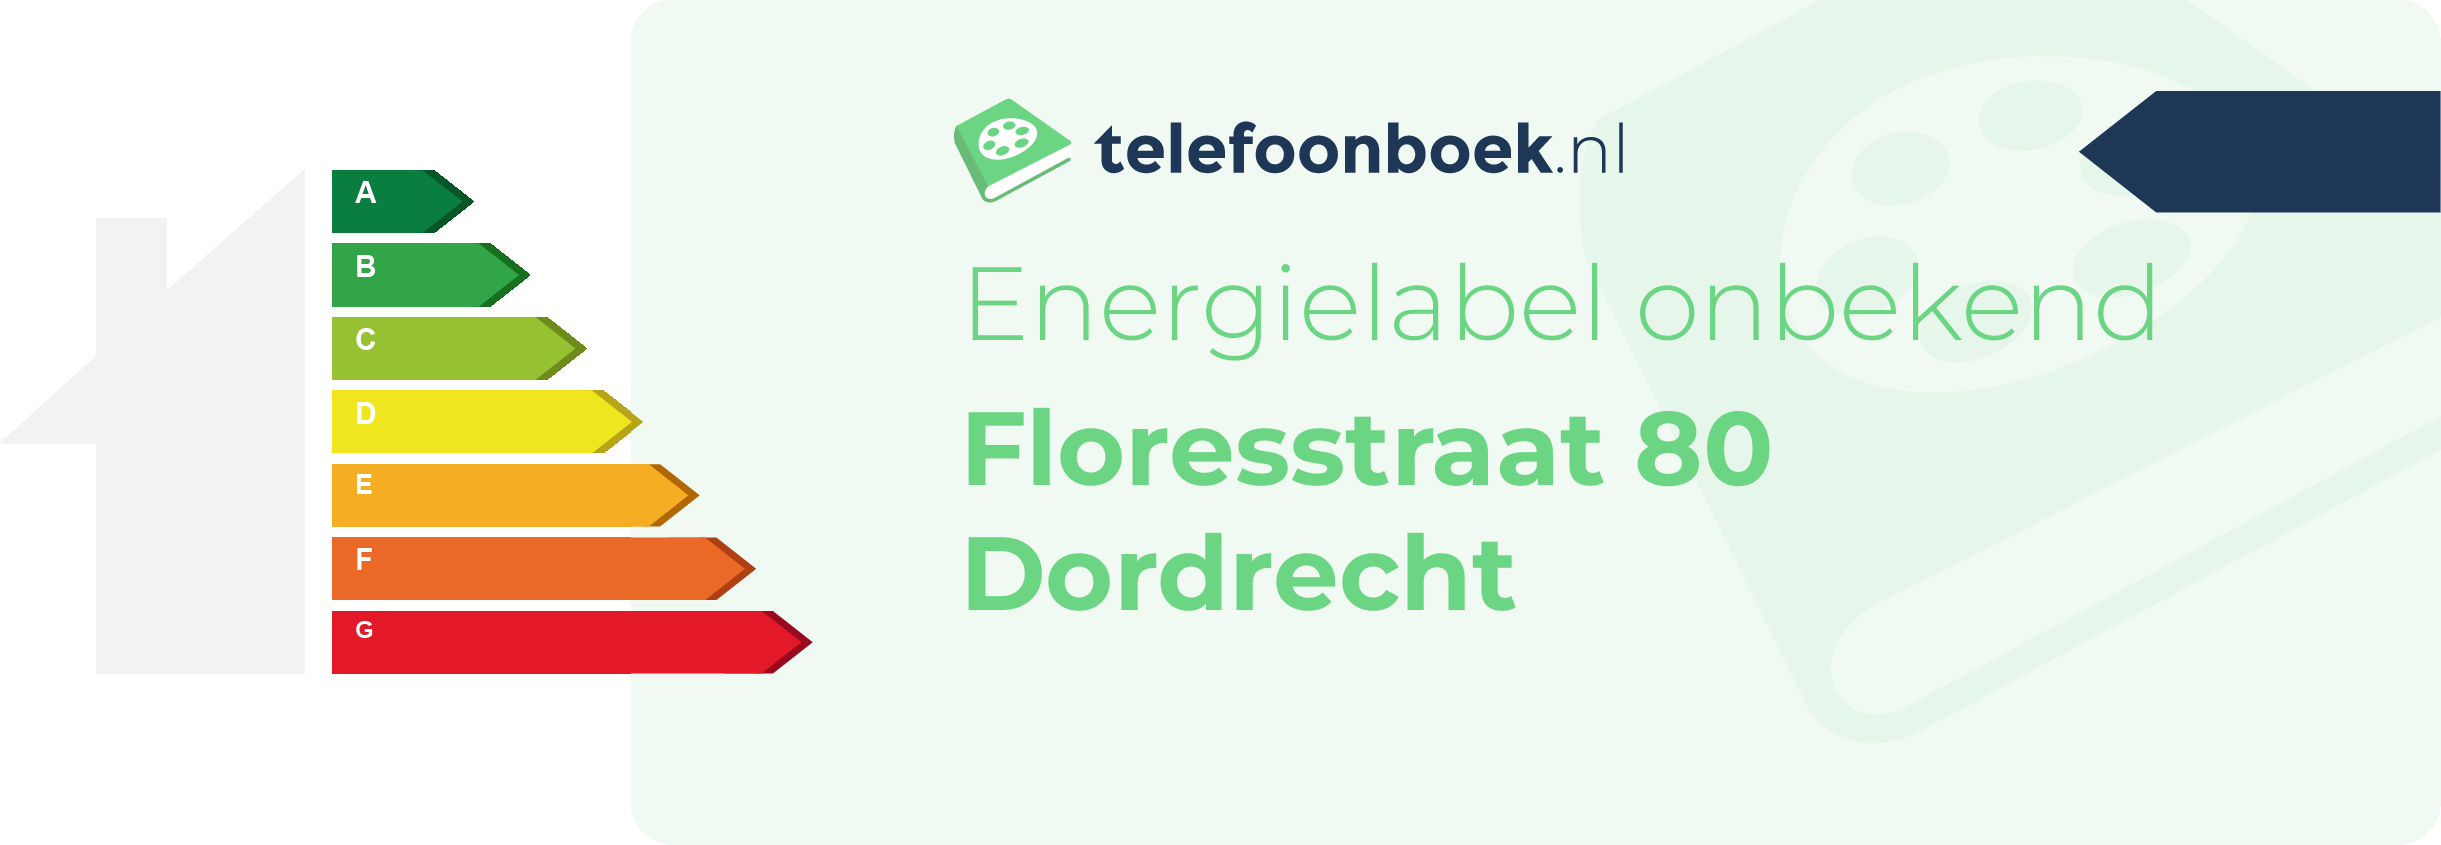 Energielabel Floresstraat 80 Dordrecht